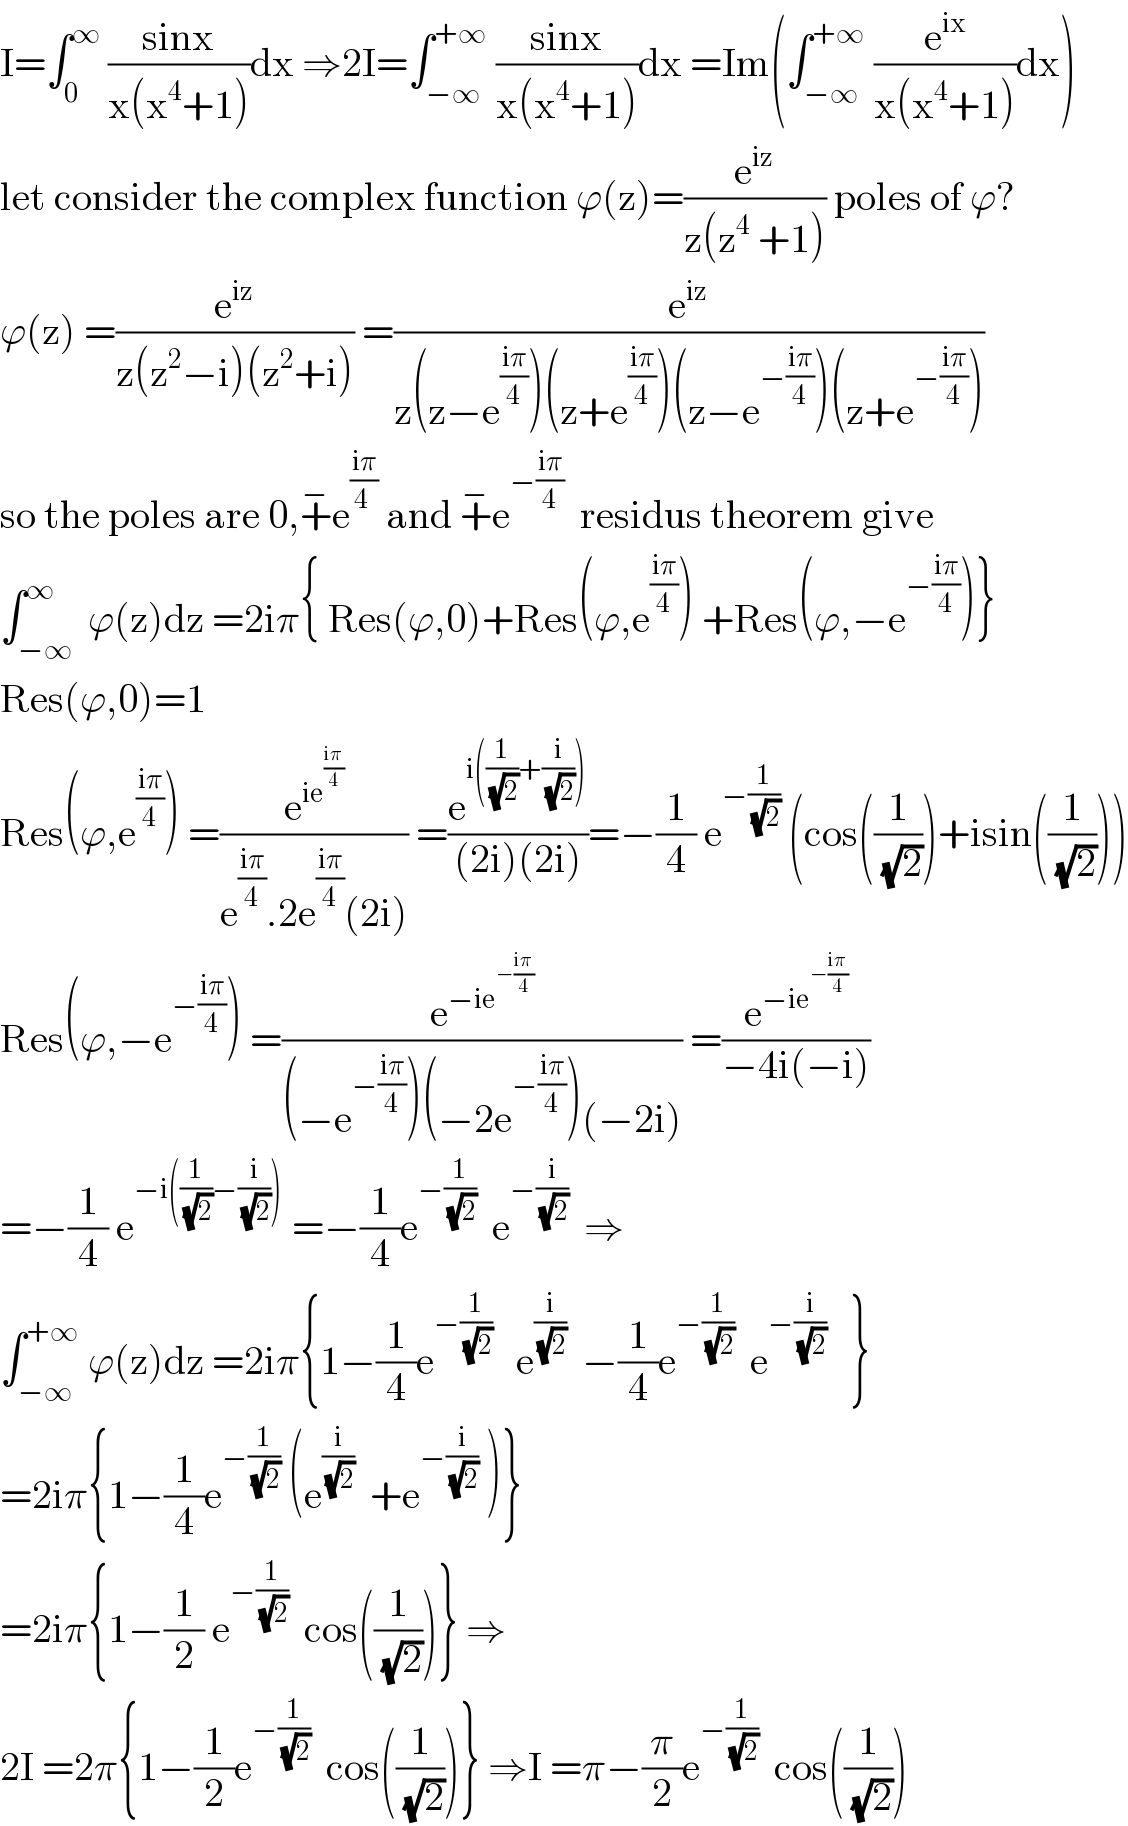 I=∫_0 ^∞  ((sinx)/(x(x^4 +1)))dx ⇒2I=∫_(−∞) ^(+∞)  ((sinx)/(x(x^4 +1)))dx =Im(∫_(−∞) ^(+∞)  (e^(ix) /(x(x^4 +1)))dx)  let consider the complex function ϕ(z)=(e^(iz) /(z(z^4  +1))) poles of ϕ?  ϕ(z) =(e^(iz) /(z(z^2 −i)(z^2 +i))) =(e^(iz) /(z(z−e^((iπ)/4) )(z+e^((iπ)/4) )(z−e^(−((iπ)/4)) )(z+e^(−((iπ)/4)) )))  so the poles are 0,+^− e^((iπ)/(4 ))  and +^− e^(−((iπ)/4))   residus theorem give  ∫_(−∞) ^∞  ϕ(z)dz =2iπ{ Res(ϕ,0)+Res(ϕ,e^((iπ)/4) ) +Res(ϕ,−e^(−((iπ)/4)) )}  Res(ϕ,0)=1  Res(ϕ,e^((iπ)/4) ) =(e^(ie^((iπ)/4) ) /(e^((iπ)/4) .2e^((iπ)/4) (2i))) =(e^(i((1/( (√2)))+(i/( (√2))))) /((2i)(2i)))=−(1/4) e^(−(1/( (√2))))  (cos((1/( (√2))))+isin((1/( (√2)))))  Res(ϕ,−e^(−((iπ)/4)) ) =(e^(−ie^(−((iπ)/4)) ) /((−e^(−((iπ)/4)) )(−2e^(−((iπ)/4)) )(−2i))) =(e^(−ie^(−((iπ)/4)) ) /(−4i(−i)))  =−(1/4) e^(−i((1/( (√2)))−(i/( (√2)))))  =−(1/4)e^(−(1/( (√2))))   e^(−(i/( (√2))))   ⇒    ∫_(−∞) ^(+∞)  ϕ(z)dz =2iπ{1−(1/4)e^(−(1/( (√2))))    e^(i/( (√2)))   −(1/4)e^(−(1/( (√2))))   e^(−(i/( (√2))))    }  =2iπ{1−(1/4)e^(−(1/( (√2))))  (e^(i/( (√2)))   +e^(−(i/( (√2))))  )}  =2iπ{1−(1/2) e^(−(1/( (√2))))   cos((1/( (√2))))} ⇒  2I =2π{1−(1/2)e^(−(1/( (√2))))   cos((1/( (√2))))} ⇒I =π−(π/2)e^(−(1/( (√2))))   cos((1/( (√2))))  